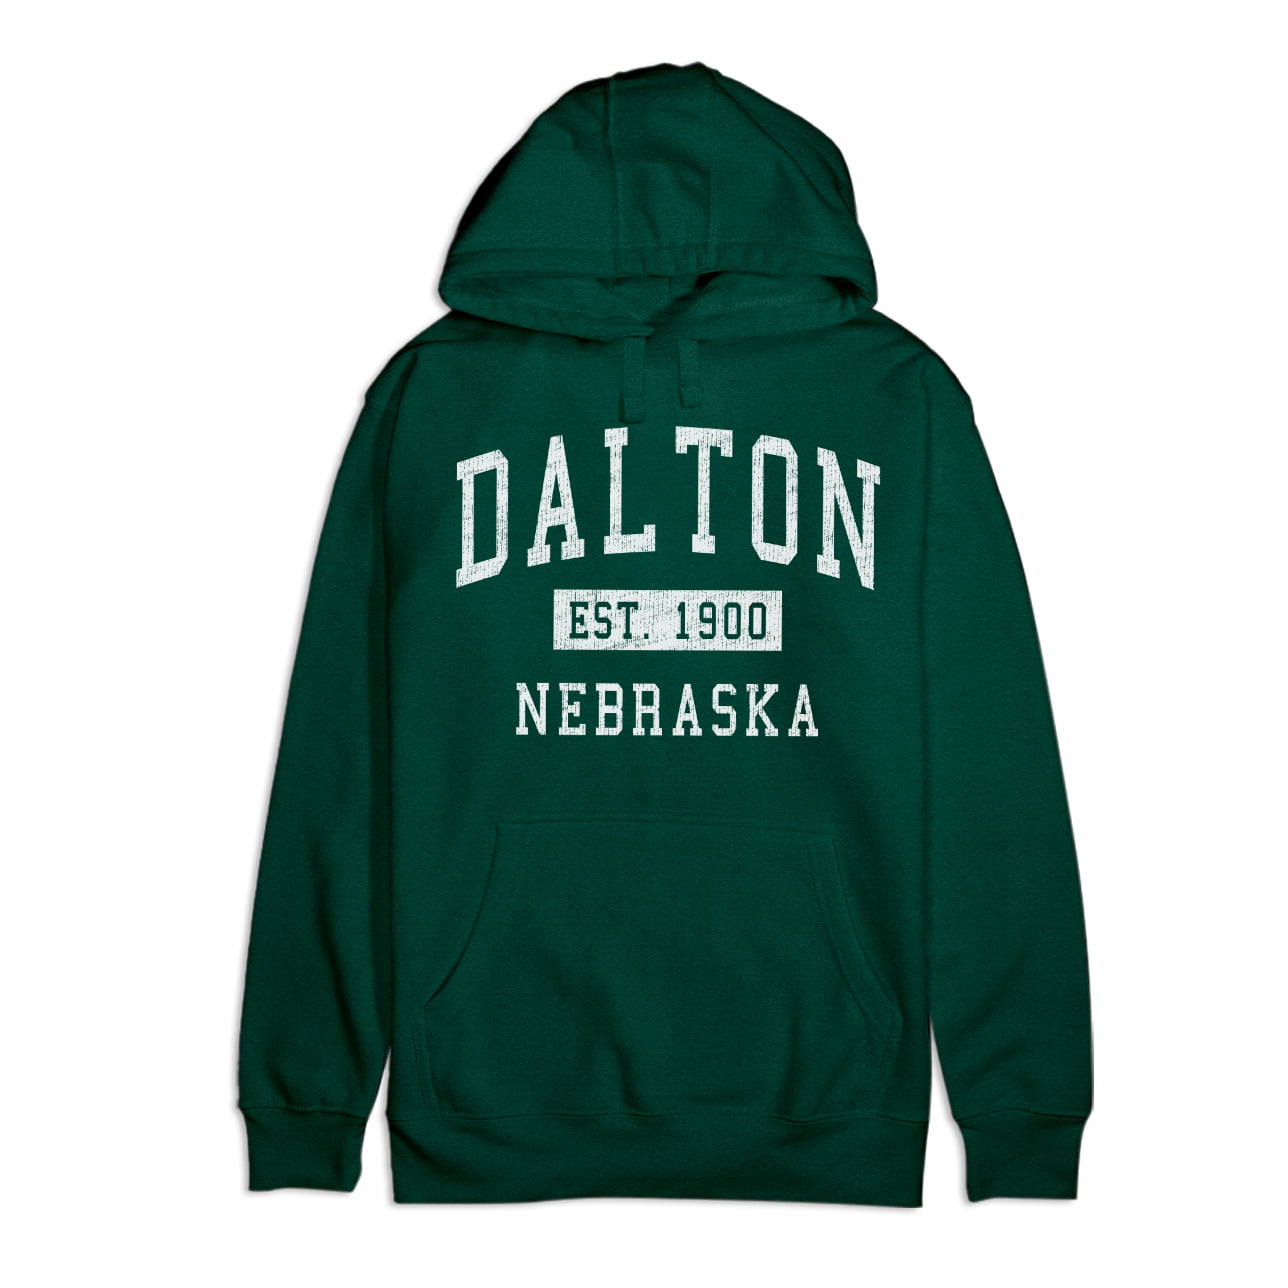 Men's Hoodies for sale in Dalton, Nebraska